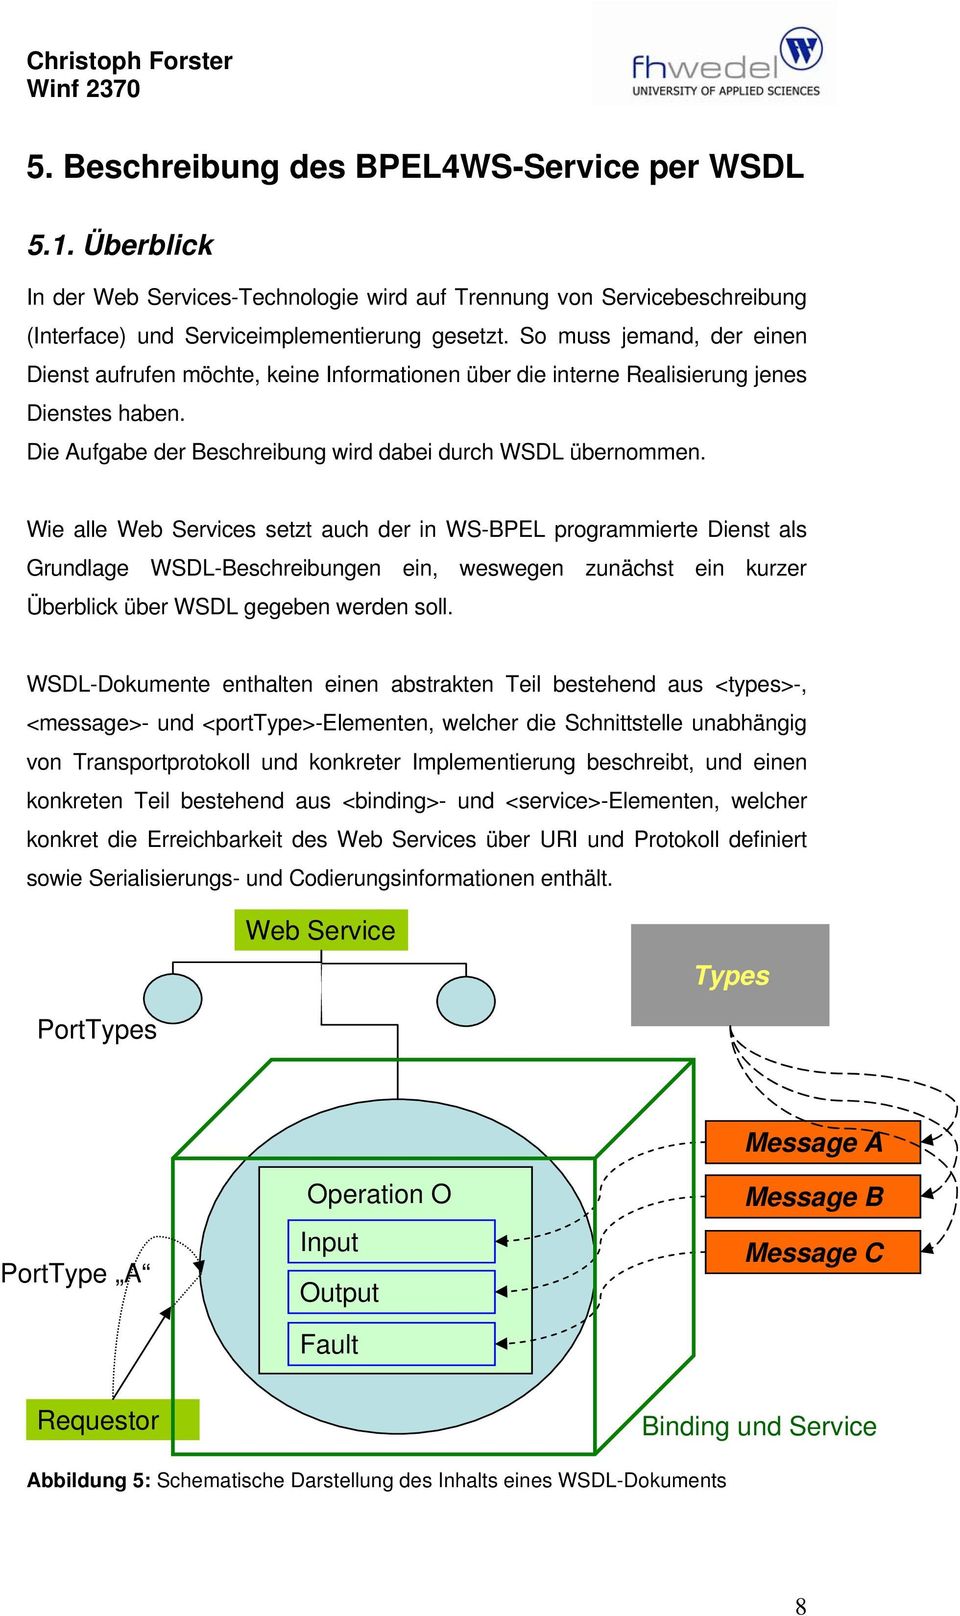 Wie alle Web Services setzt auch der in WS-BPEL programmierte Dienst als Grundlage WSDL-Beschreibungen ein, weswegen zunächst ein kurzer Überblick über WSDL gegeben werden soll.